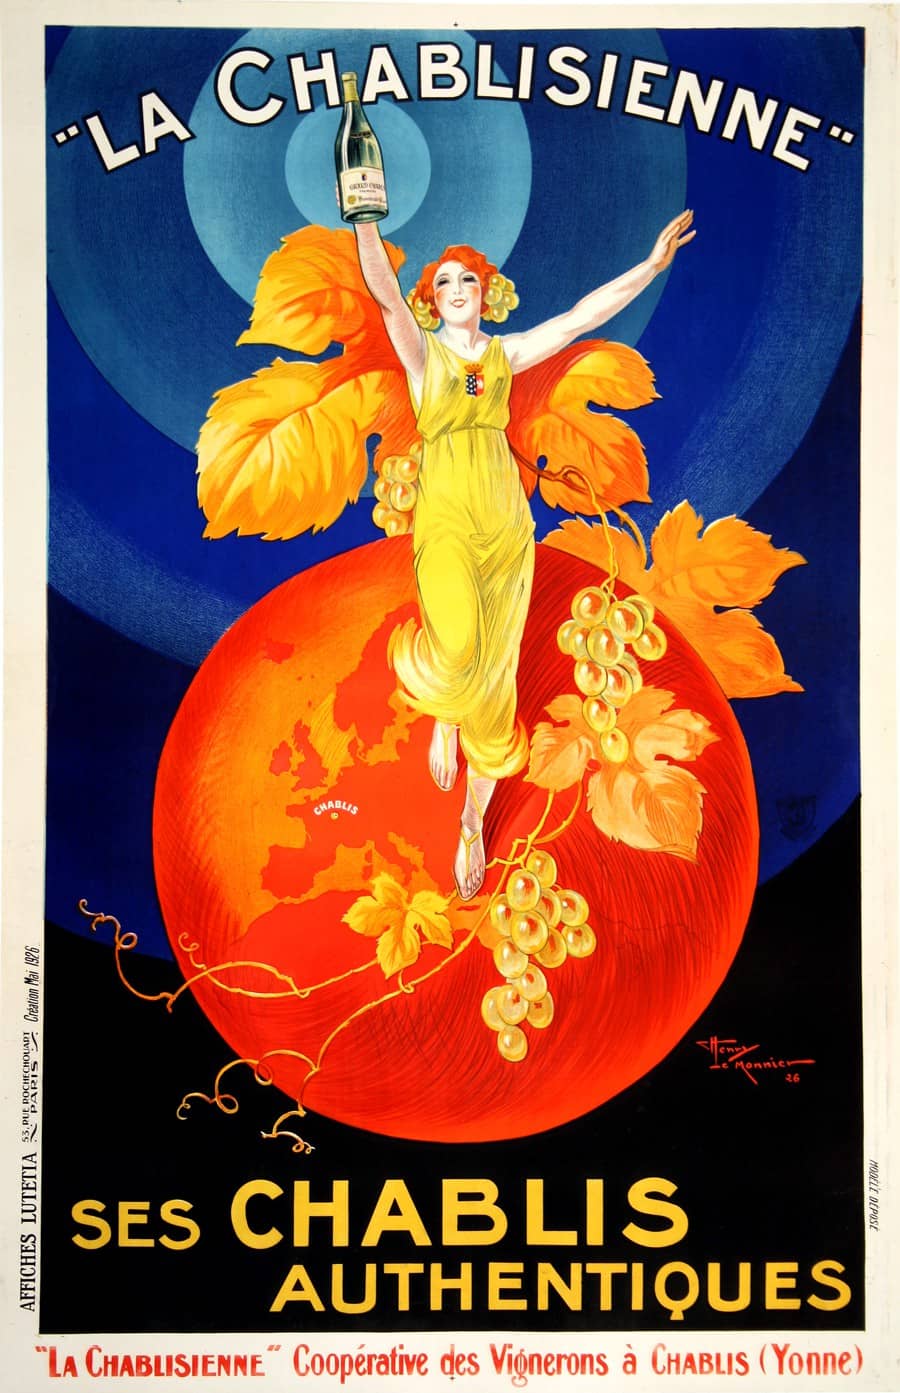 Original Vintage Chablisienne Wine Poster by Henri le Monnier 1926